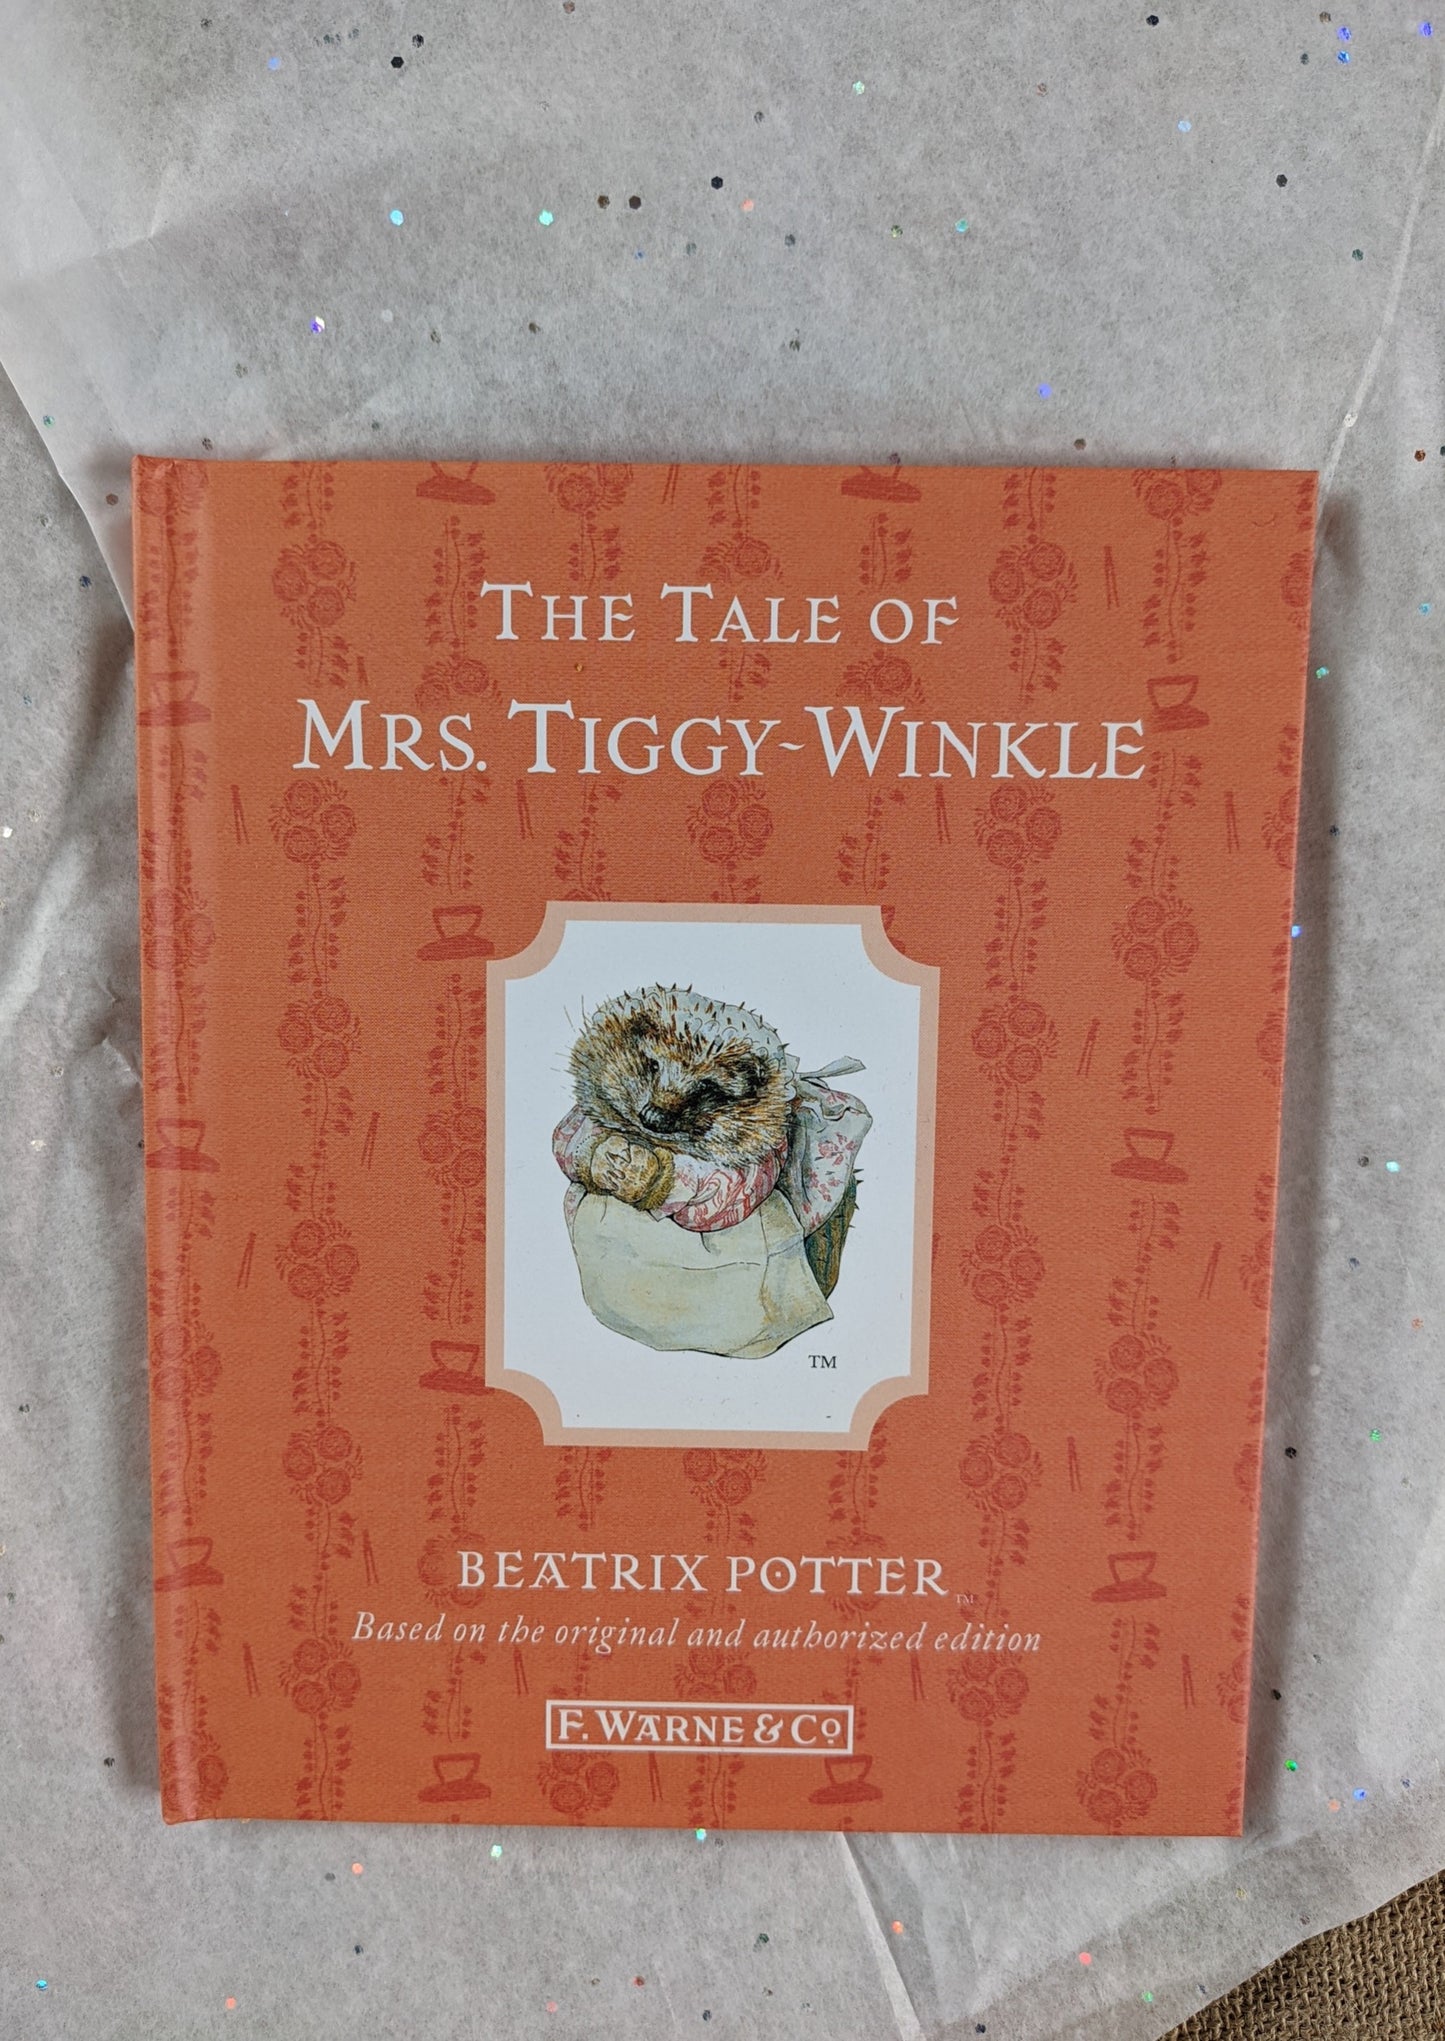 Mrs Tiggy-Winkle in a bag